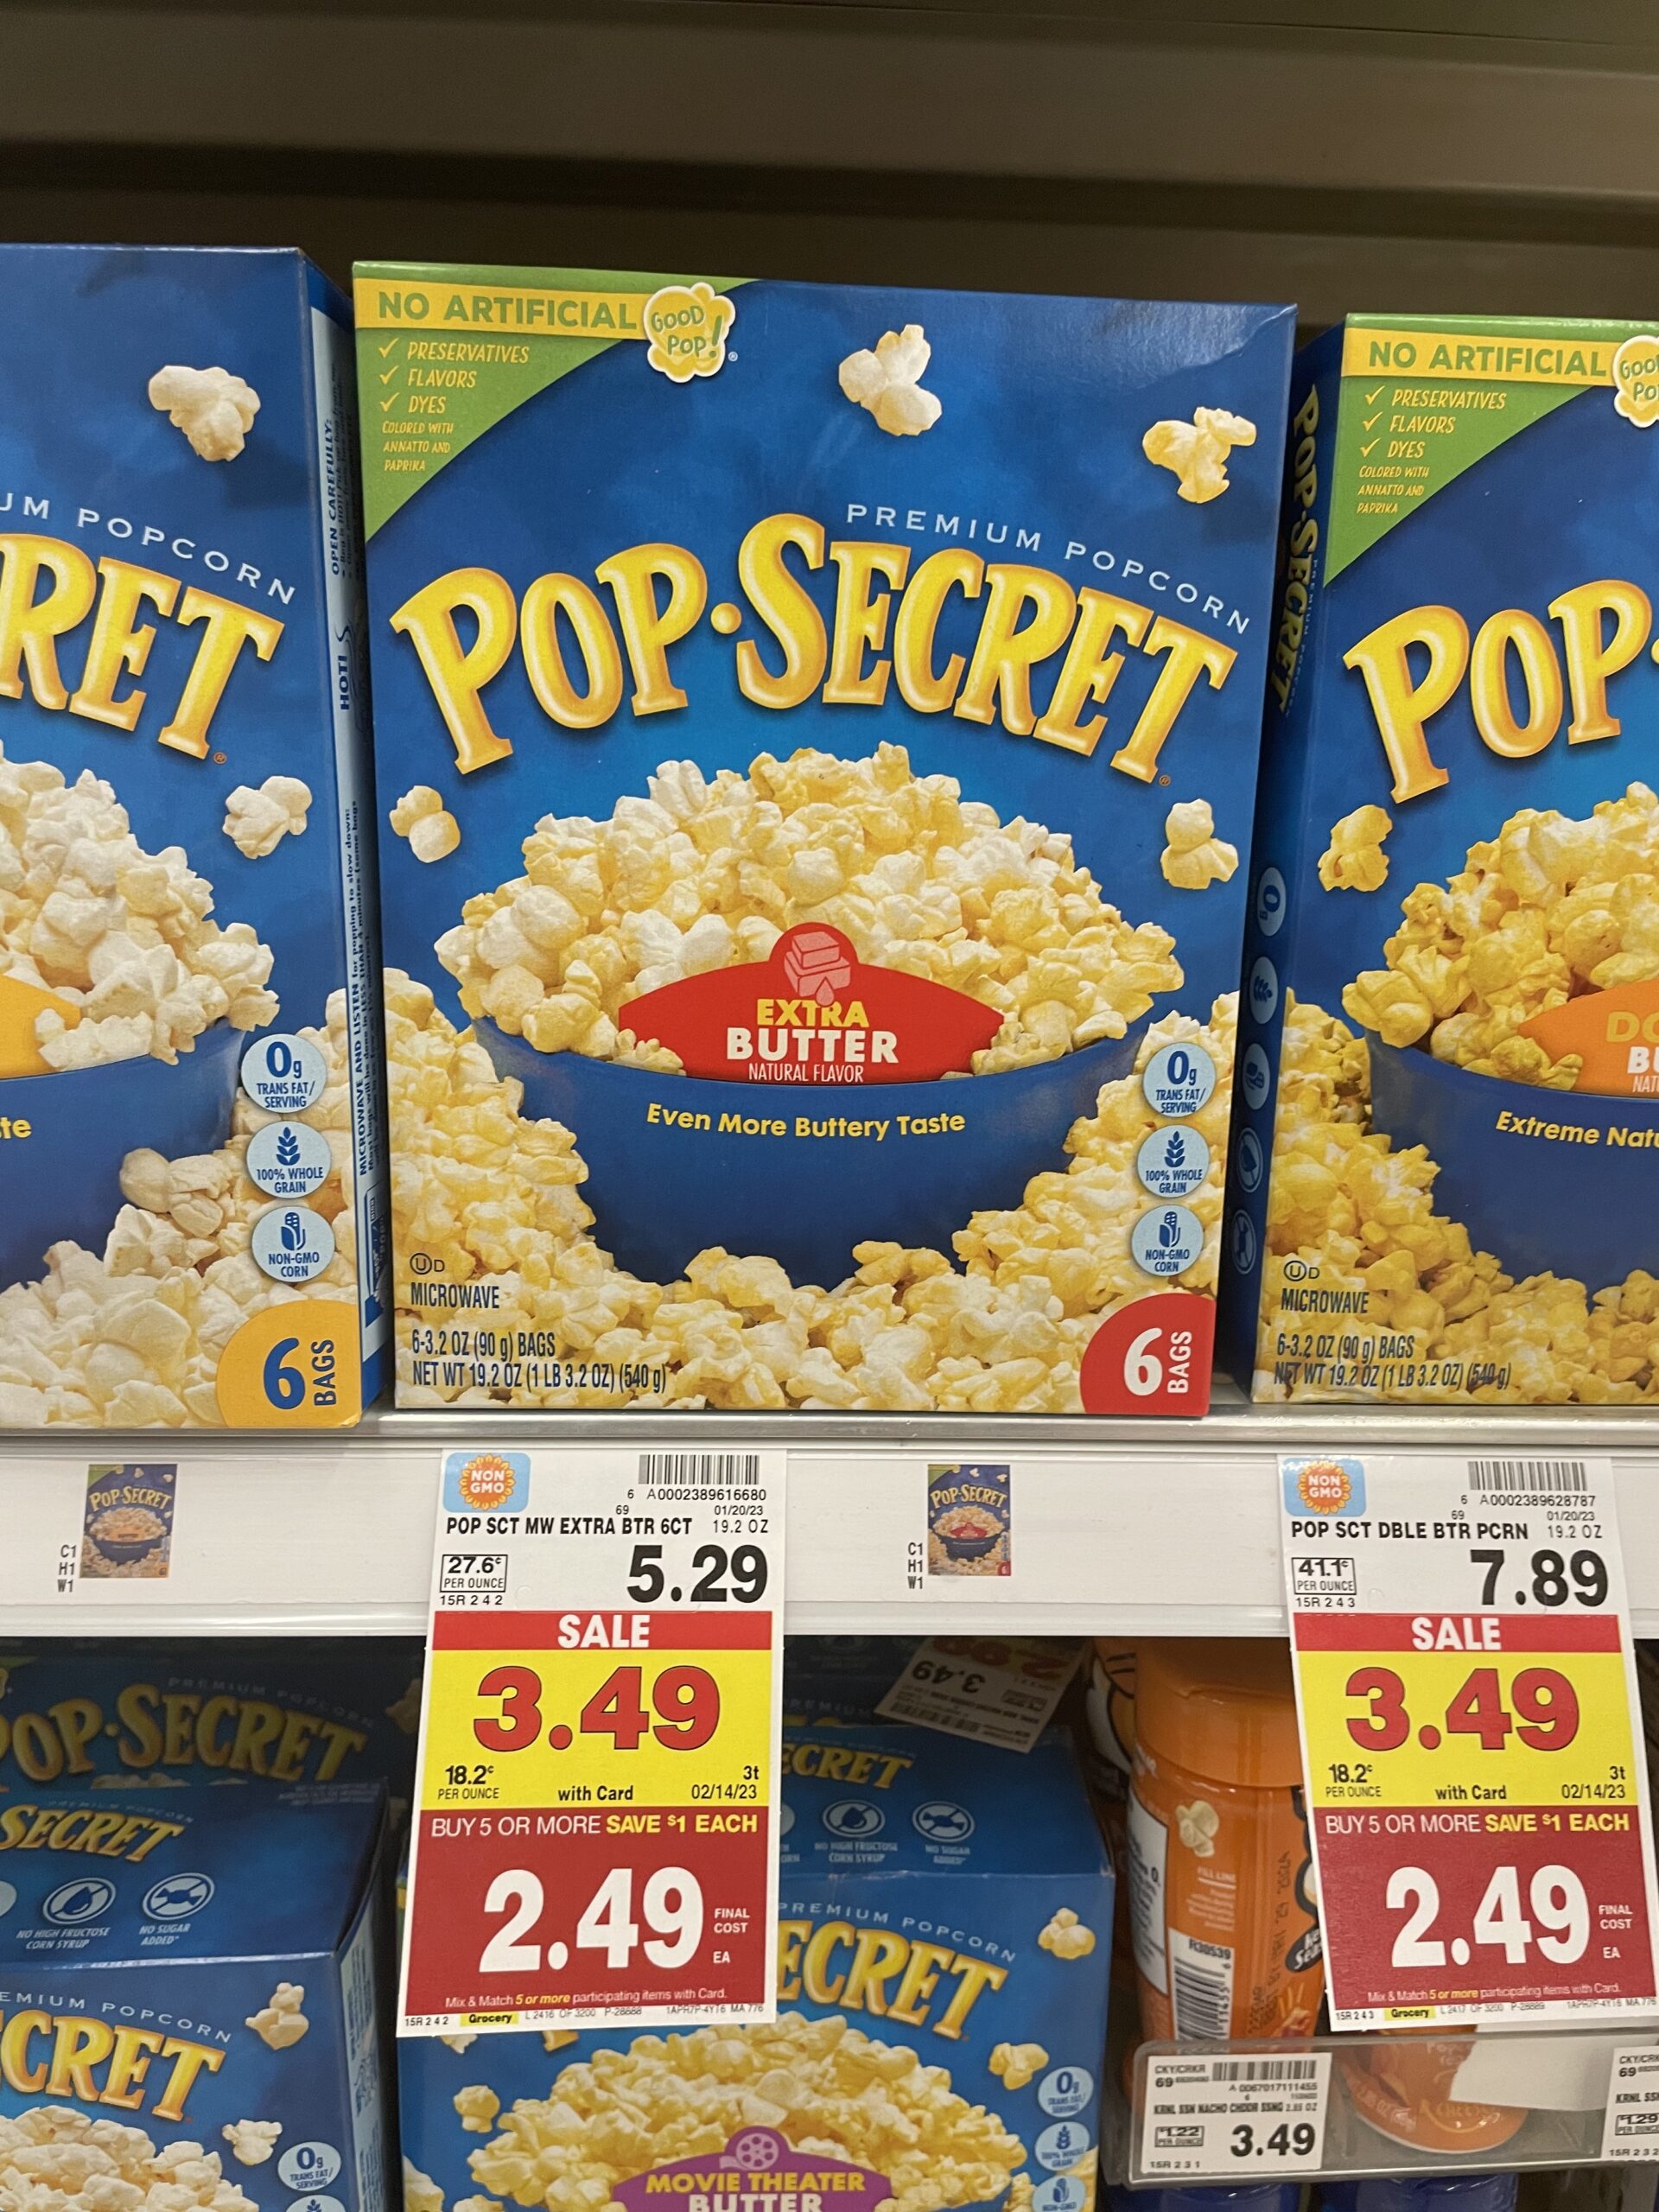 pop secret popcorn kroger shelf image 5